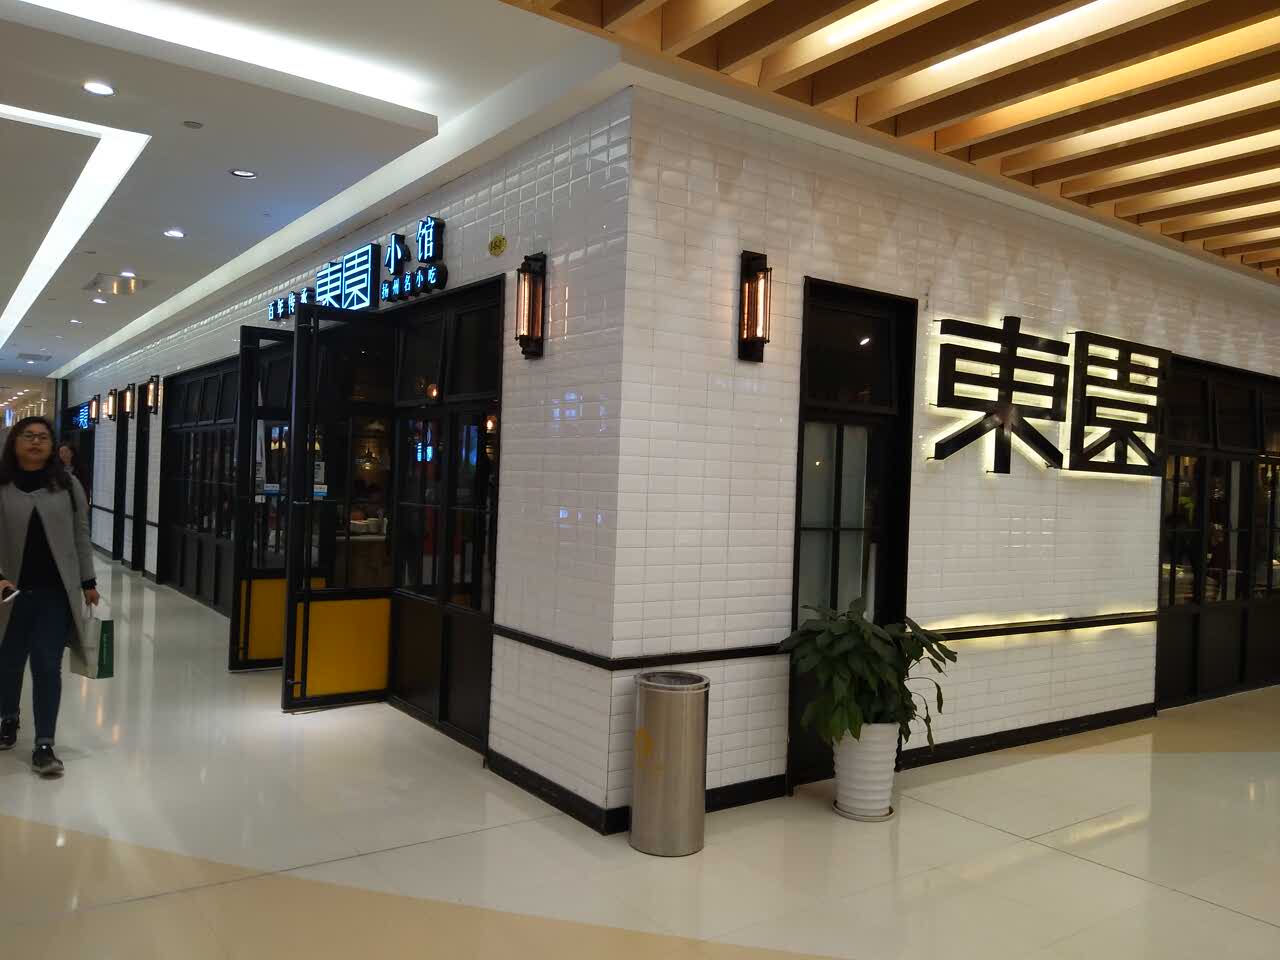 【携程美食林】扬州东园小馆(三盛广场店)餐馆,扬州挺特色的一家餐厅